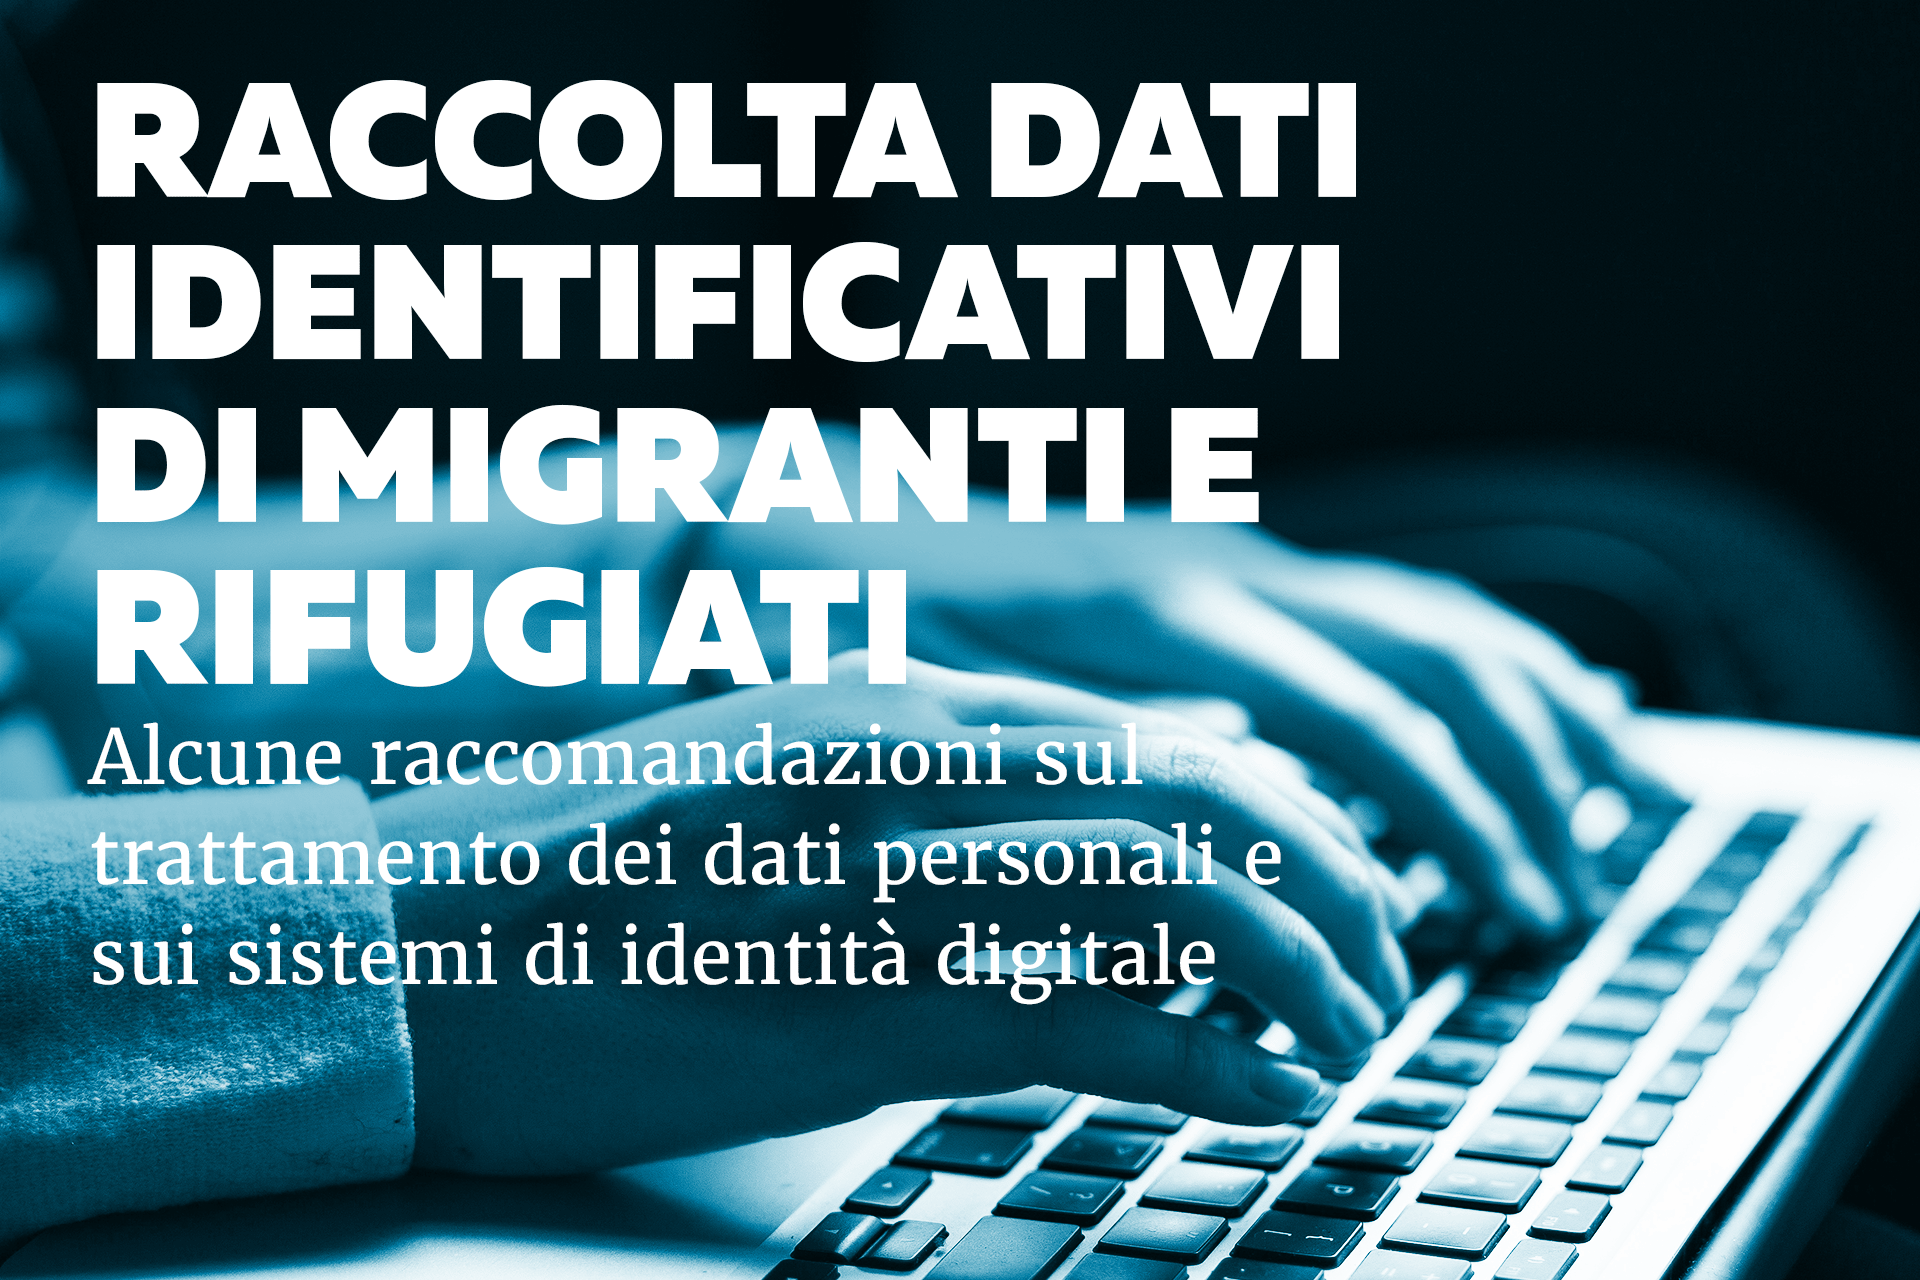 Identità digitale, Migranti e Rifugiati: Il caso italiano